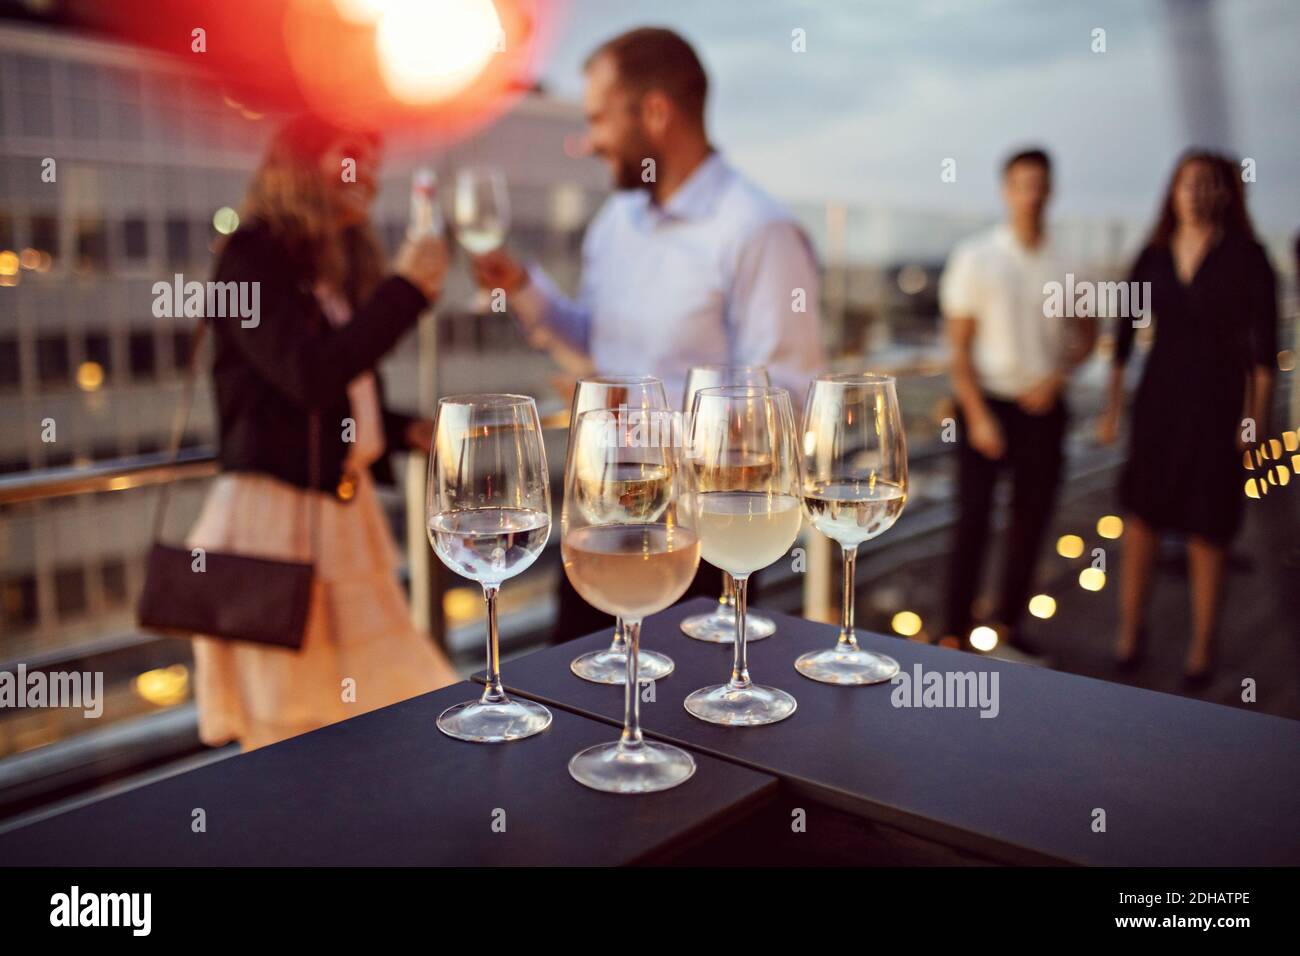 Nahaufnahme der Weingläser auf dem Tisch mit Business-Profis in angeordnet Hintergrund auf der Terrasse während der Party Stockfoto